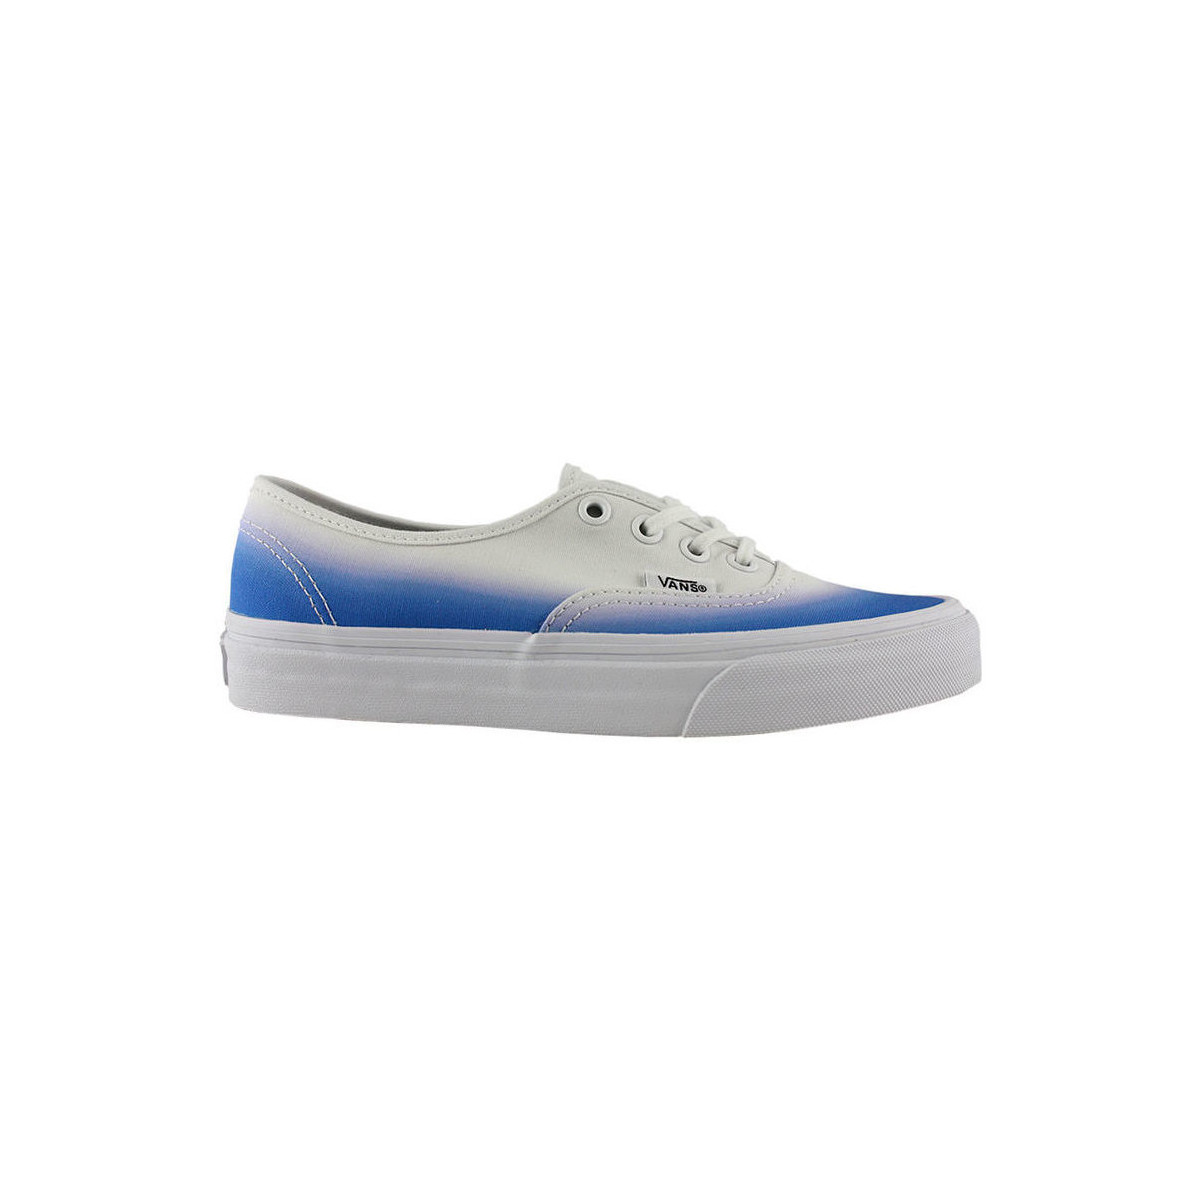 Sneakers Vans Authentic hombre blue true white